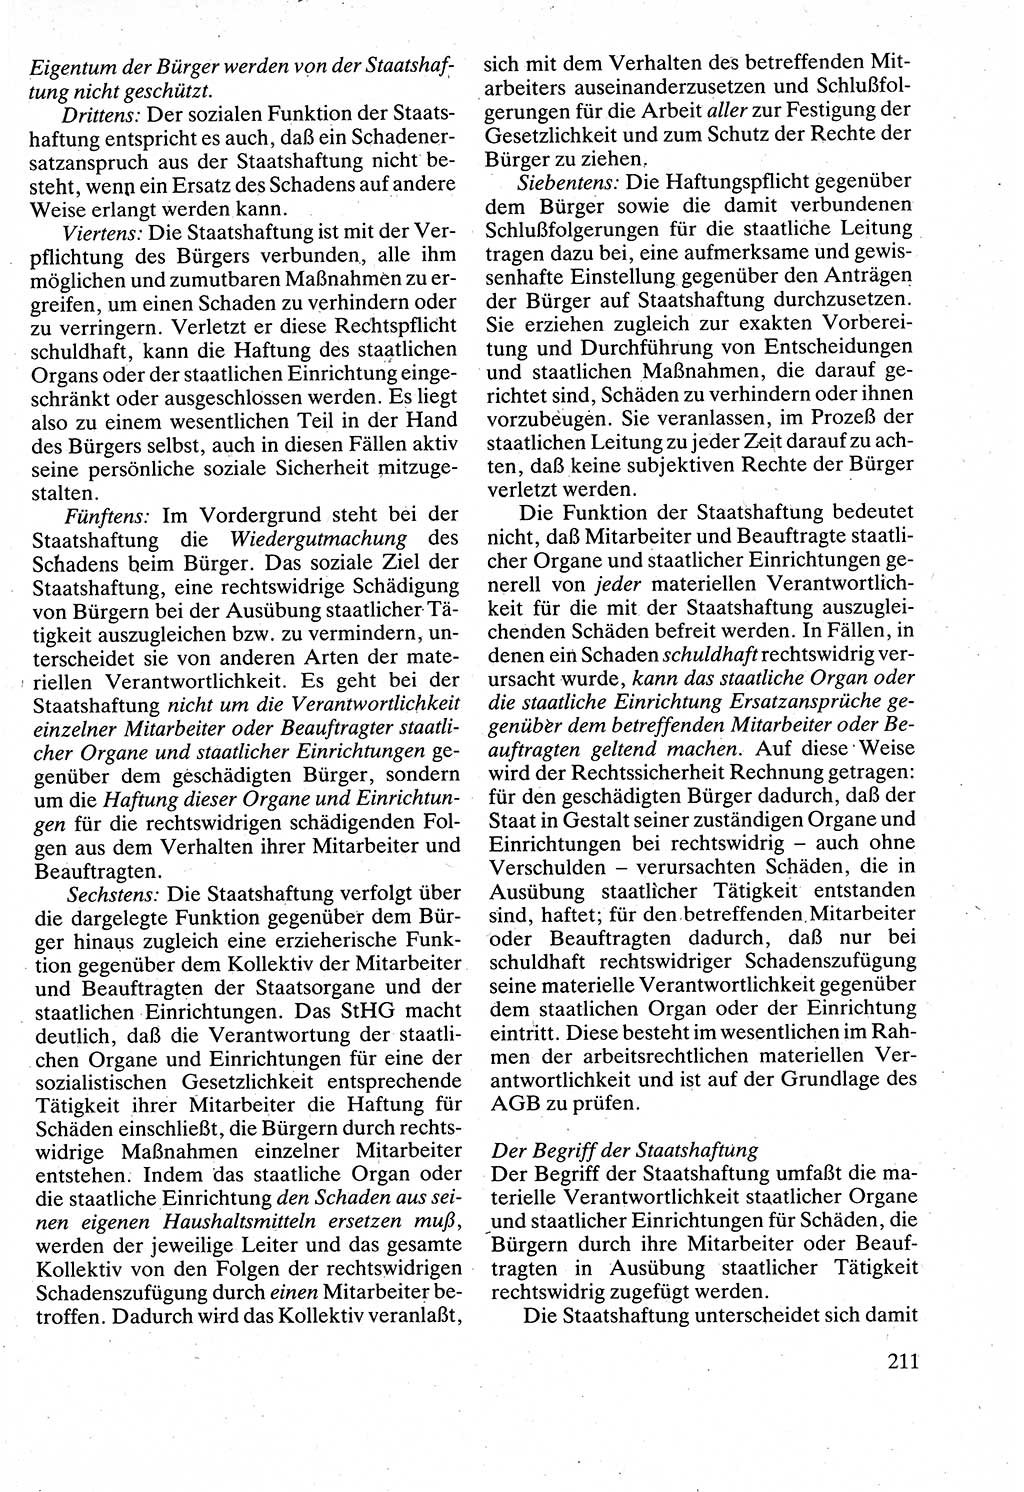 Verwaltungsrecht [Deutsche Demokratische Republik (DDR)], Lehrbuch 1988, Seite 211 (Verw.-R. DDR Lb. 1988, S. 211)